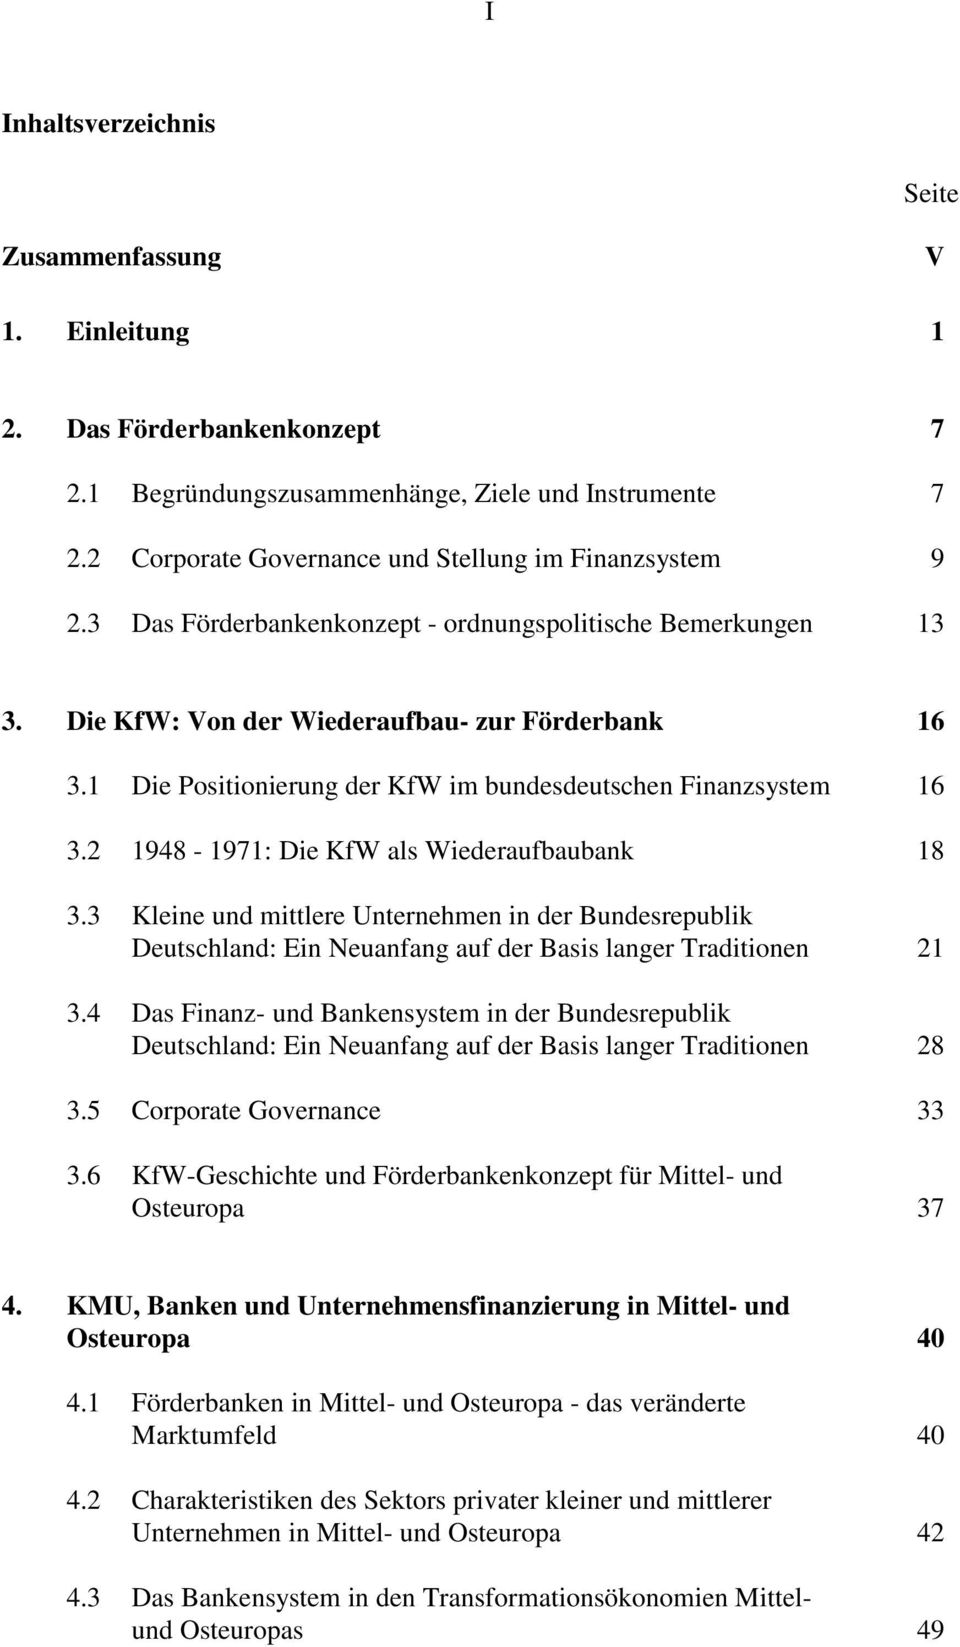 1 Die Positionierung der KfW im bundesdeutschen Finanzsystem 16 3.2 1948-1971: Die KfW als Wiederaufbaubank 18 3.